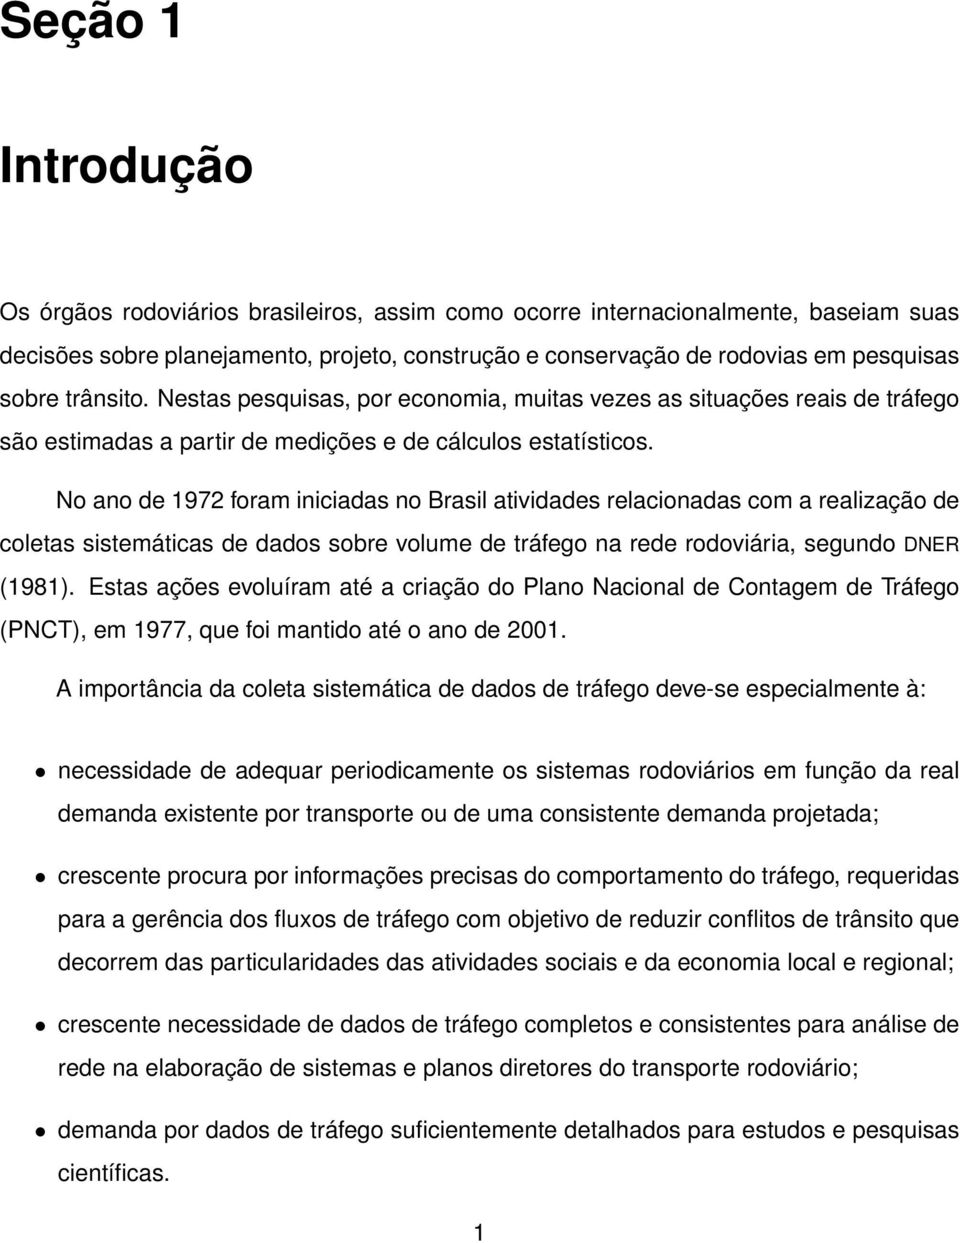 No ano de 1972 foram iniciadas no Brasil atividades relacionadas com a realização de coletas sistemáticas de dados sobre volume de tráfego na rede rodoviária, segundo DNER (1981).